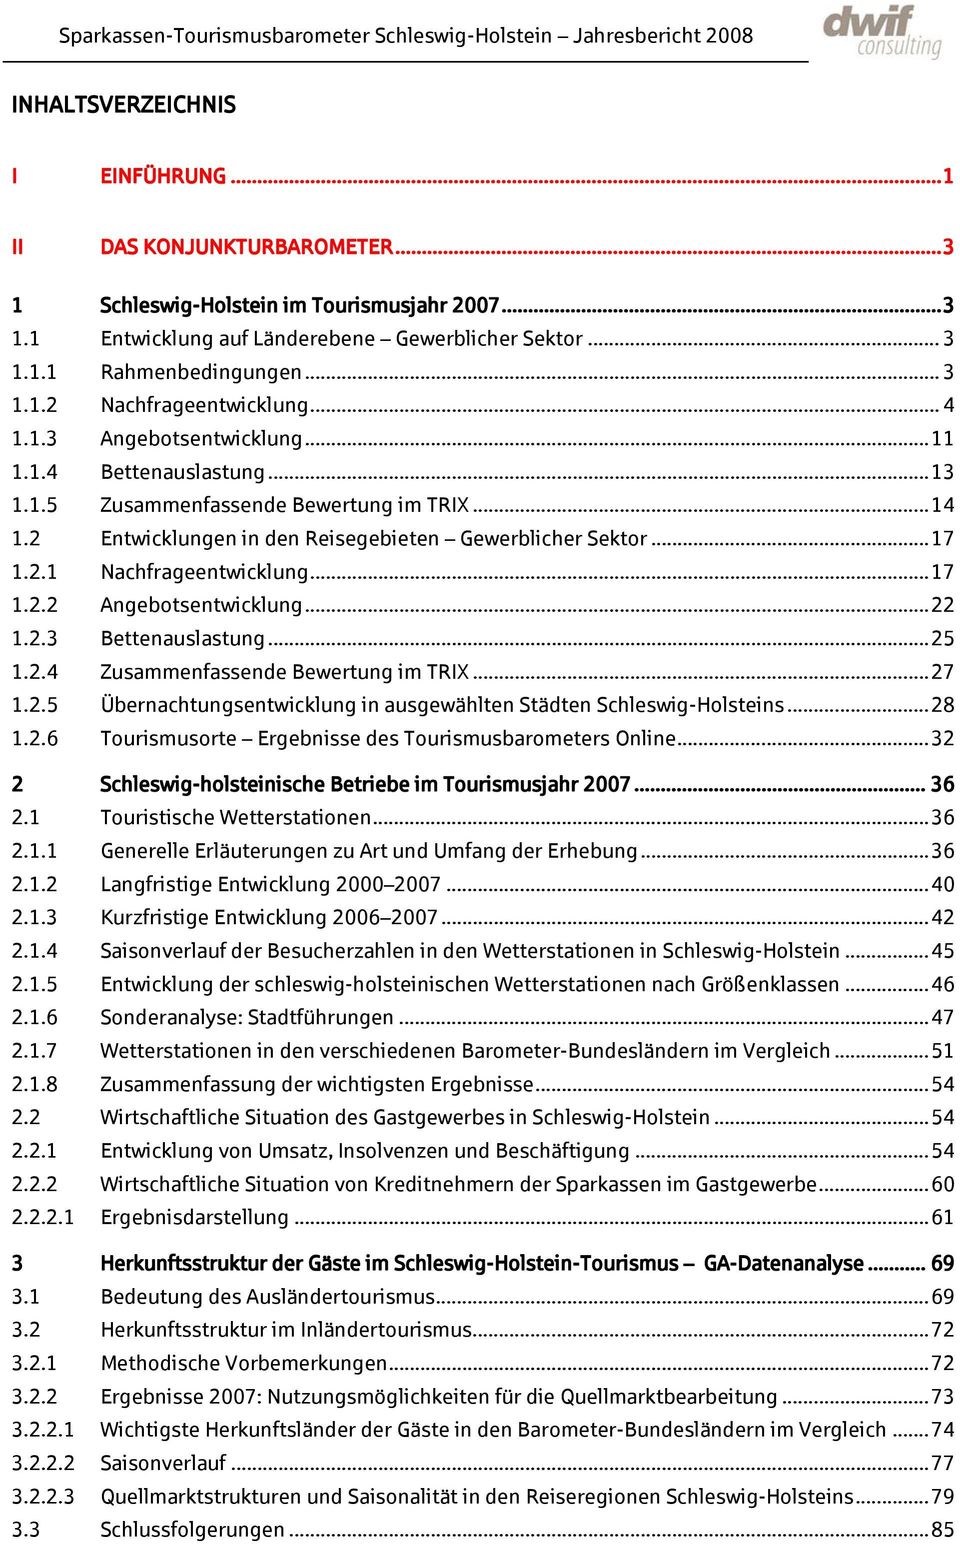 ..17 1.2.2 Angebotsentwicklung...22 1.2.3 Bettenauslastung...25 1.2.4 Zusammenfassende Bewertung im TRIX...27 1.2.5 Übernachtungsentwicklung in ausgewählten Städten Schleswig-Holsteins...28 1.2.6 Tourismusorte Ergebnisse des Tourismusbarometers Online.